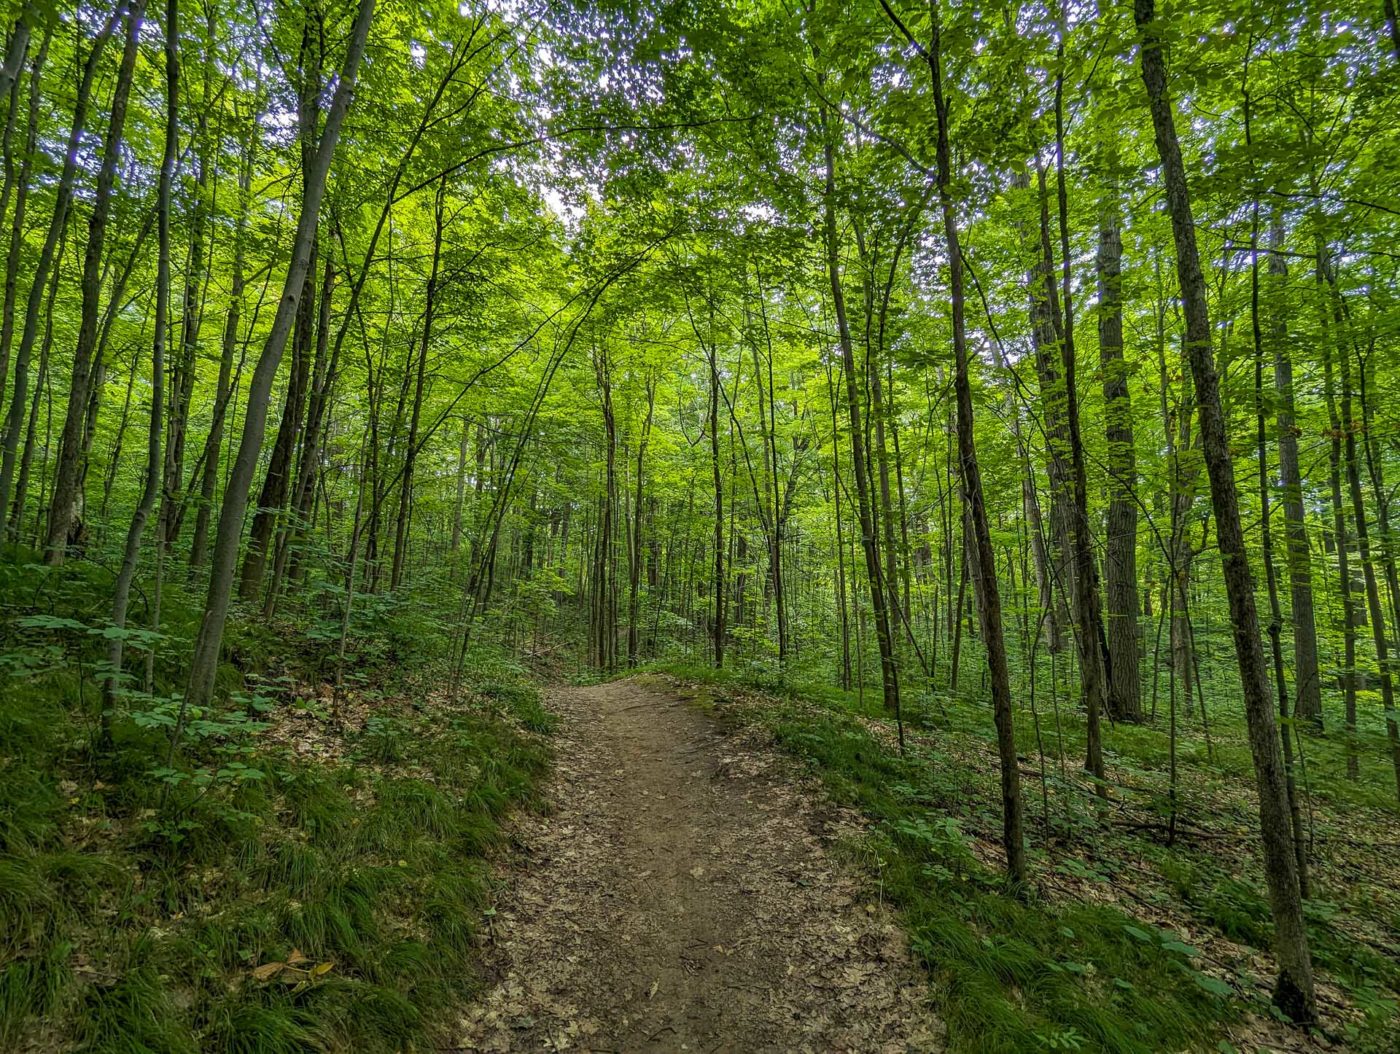 A trail through a lush green forest.